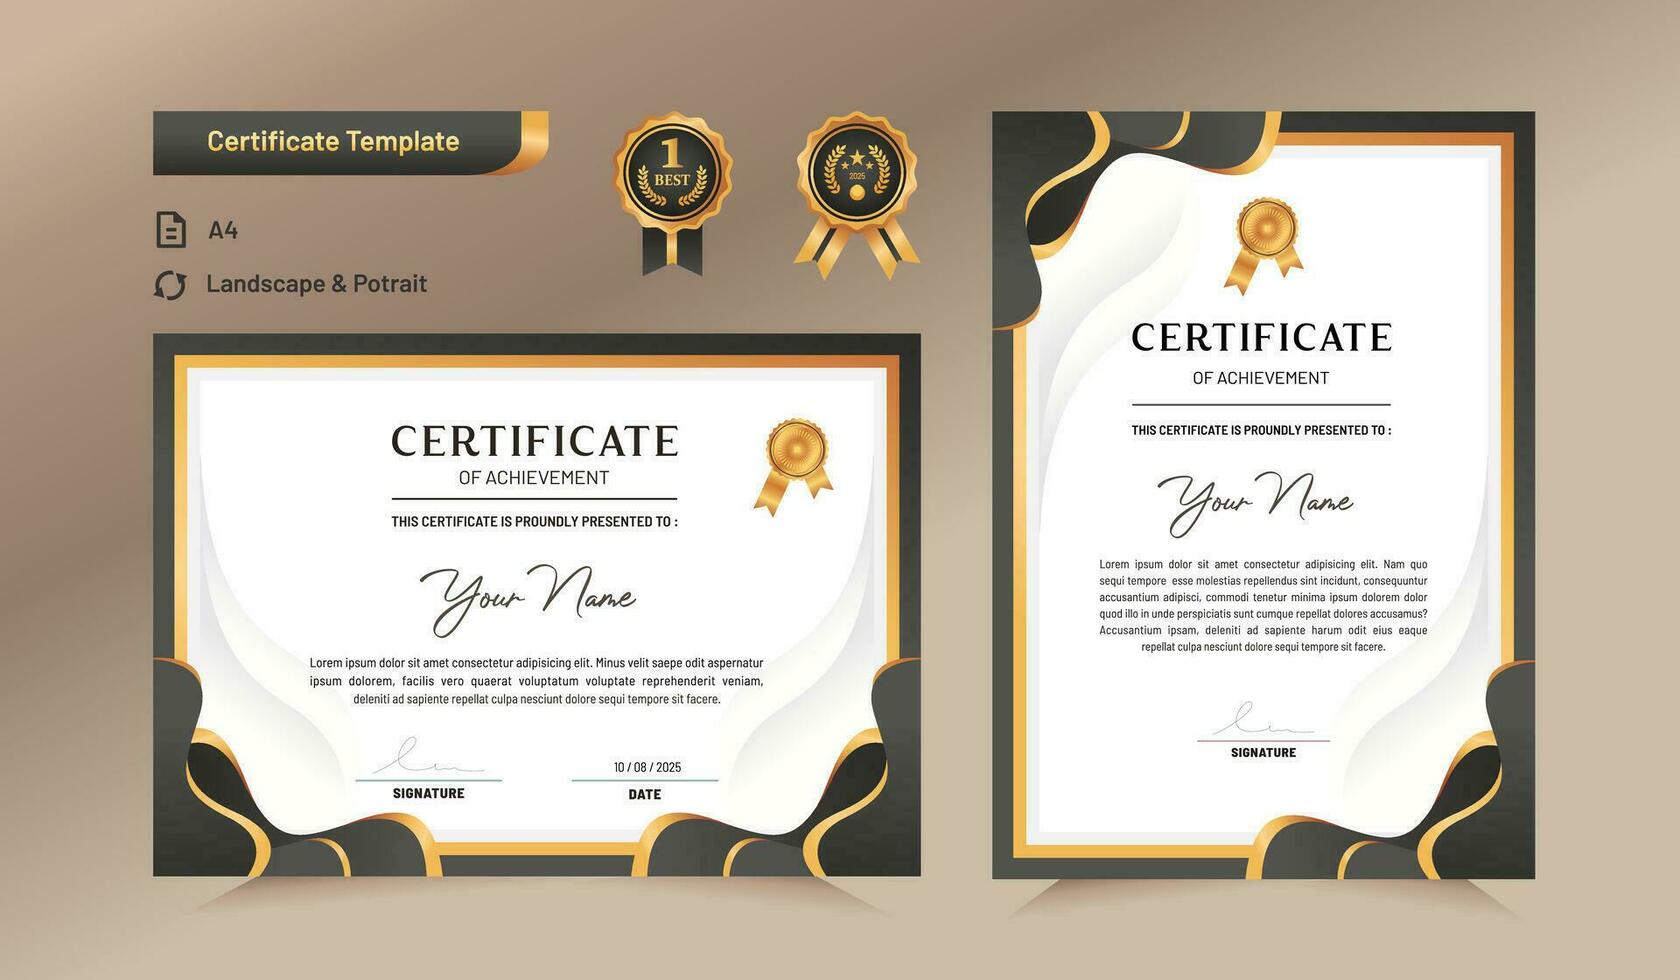 modèle de certificat de réussite vert et or avec badge et bordure en or. pour les récompenses, les affaires et les besoins en éducation. illustration vectorielle vecteur